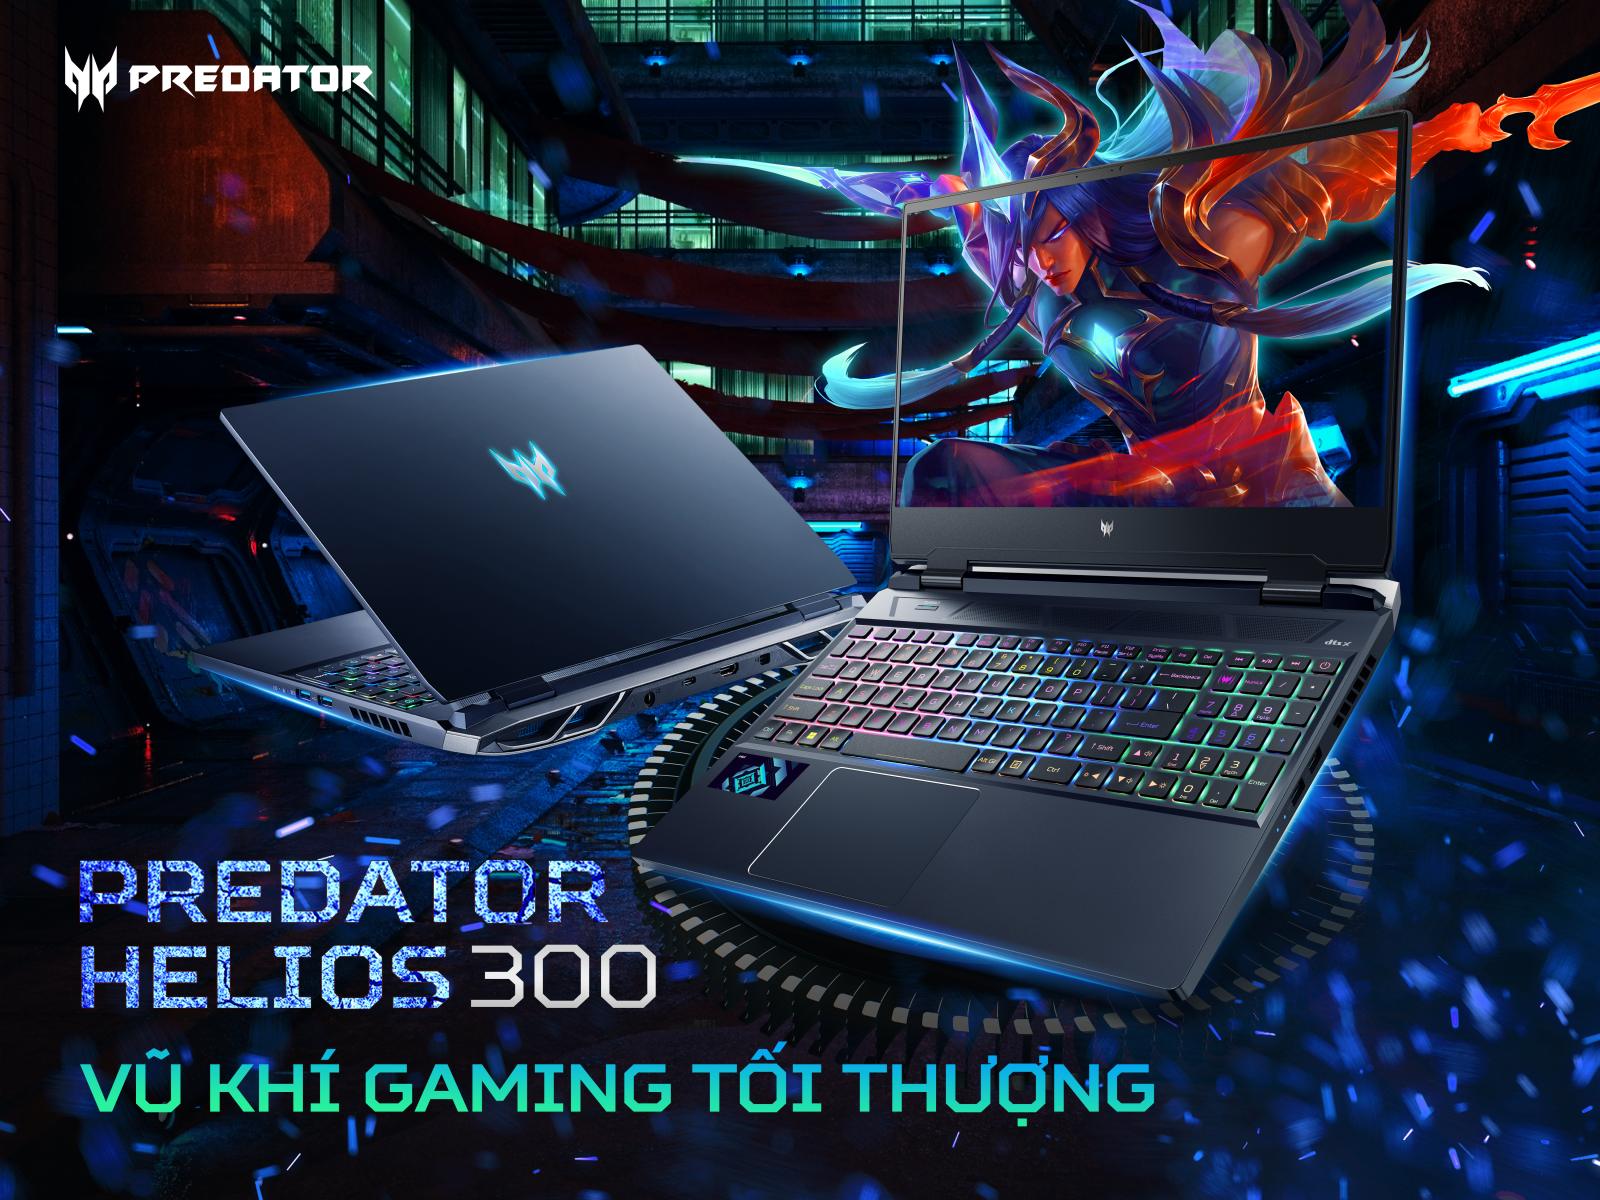 Vũ Khí Gaming Tối Thượng - Laptop Gaming Cao Cấp Cấu Hình Khủng Predator Helios 300 2022